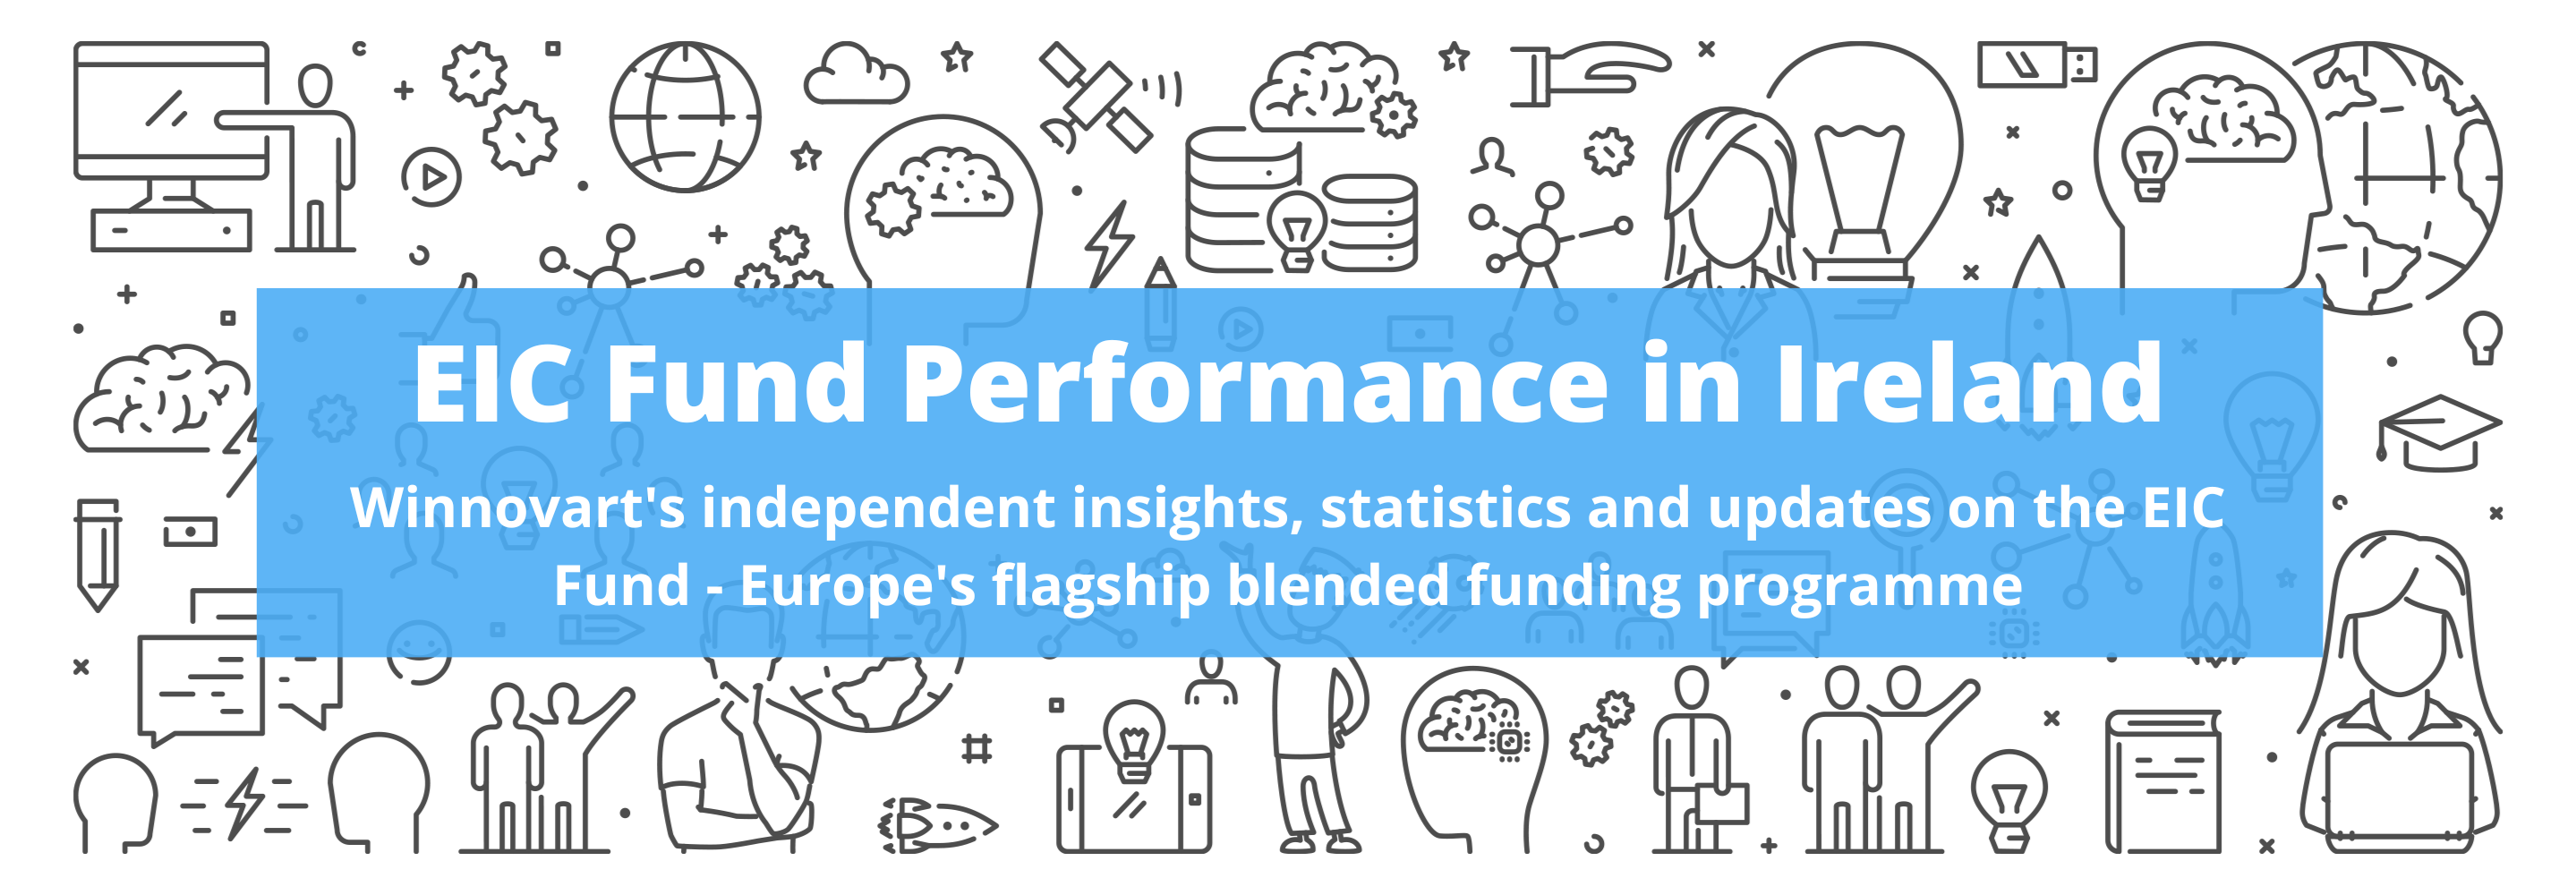 EIC Fund Performance in Ireland